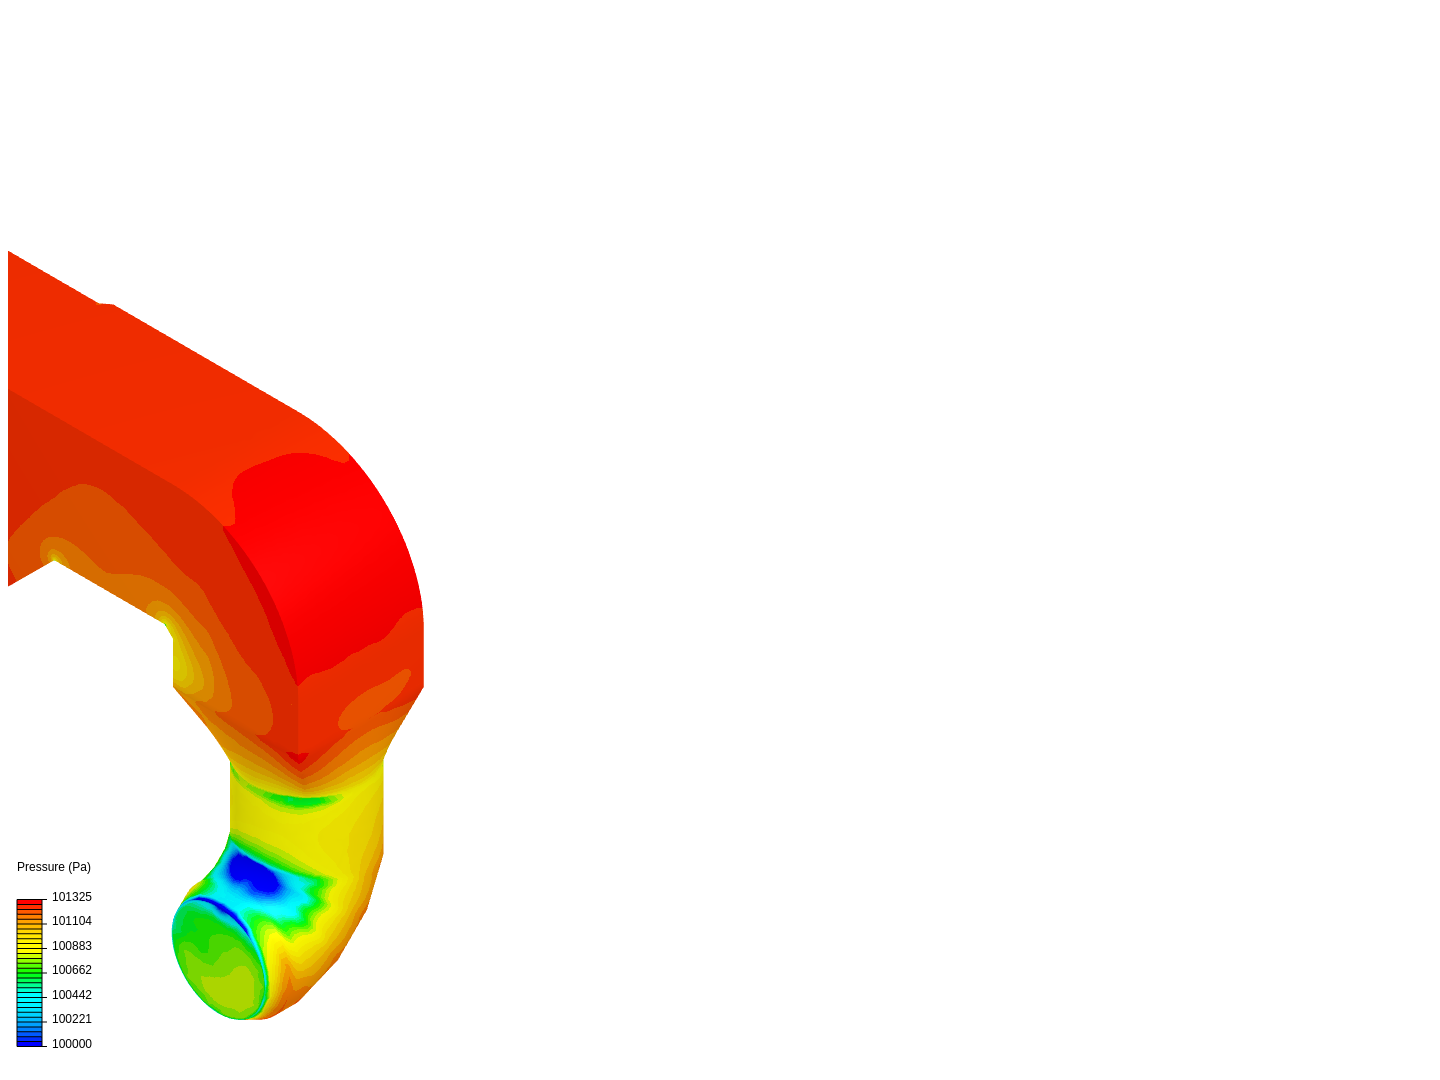 Erembodegem Duct Simulation 11 image